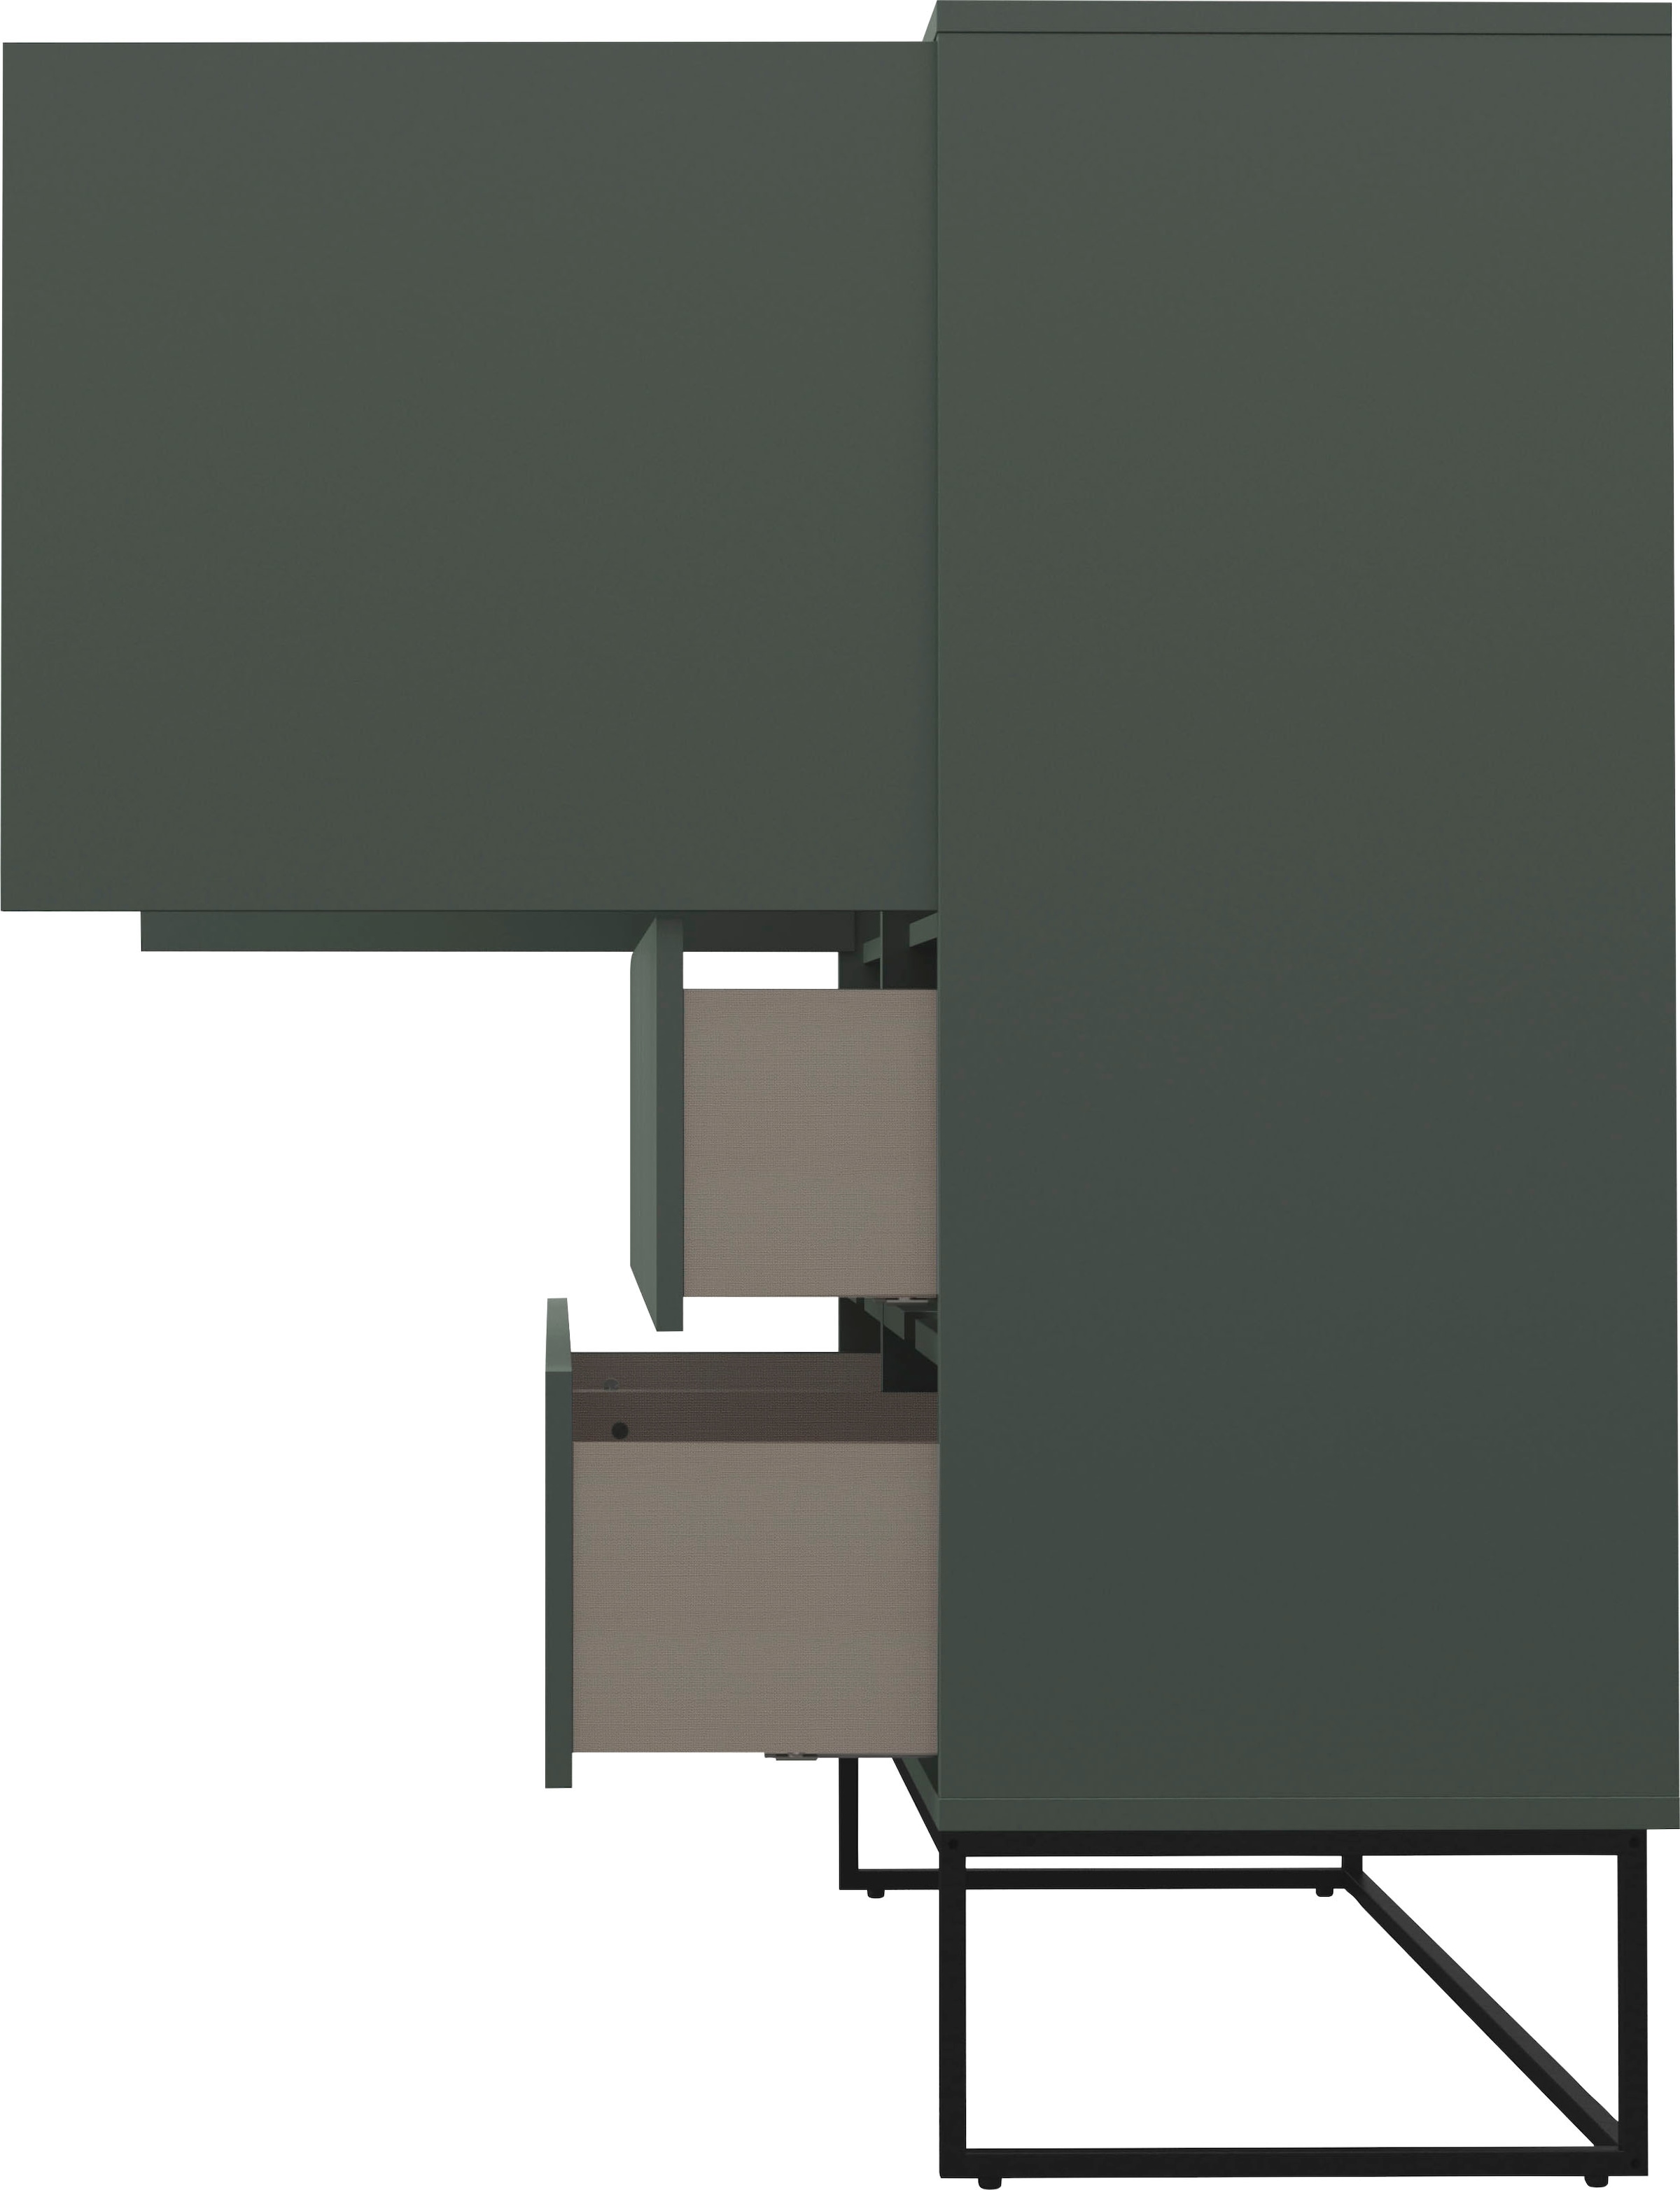 Tenzo Lowboard LIPP, mit 2 Türen und 2 offenen Fächern, Design von Tenzo  Design studio